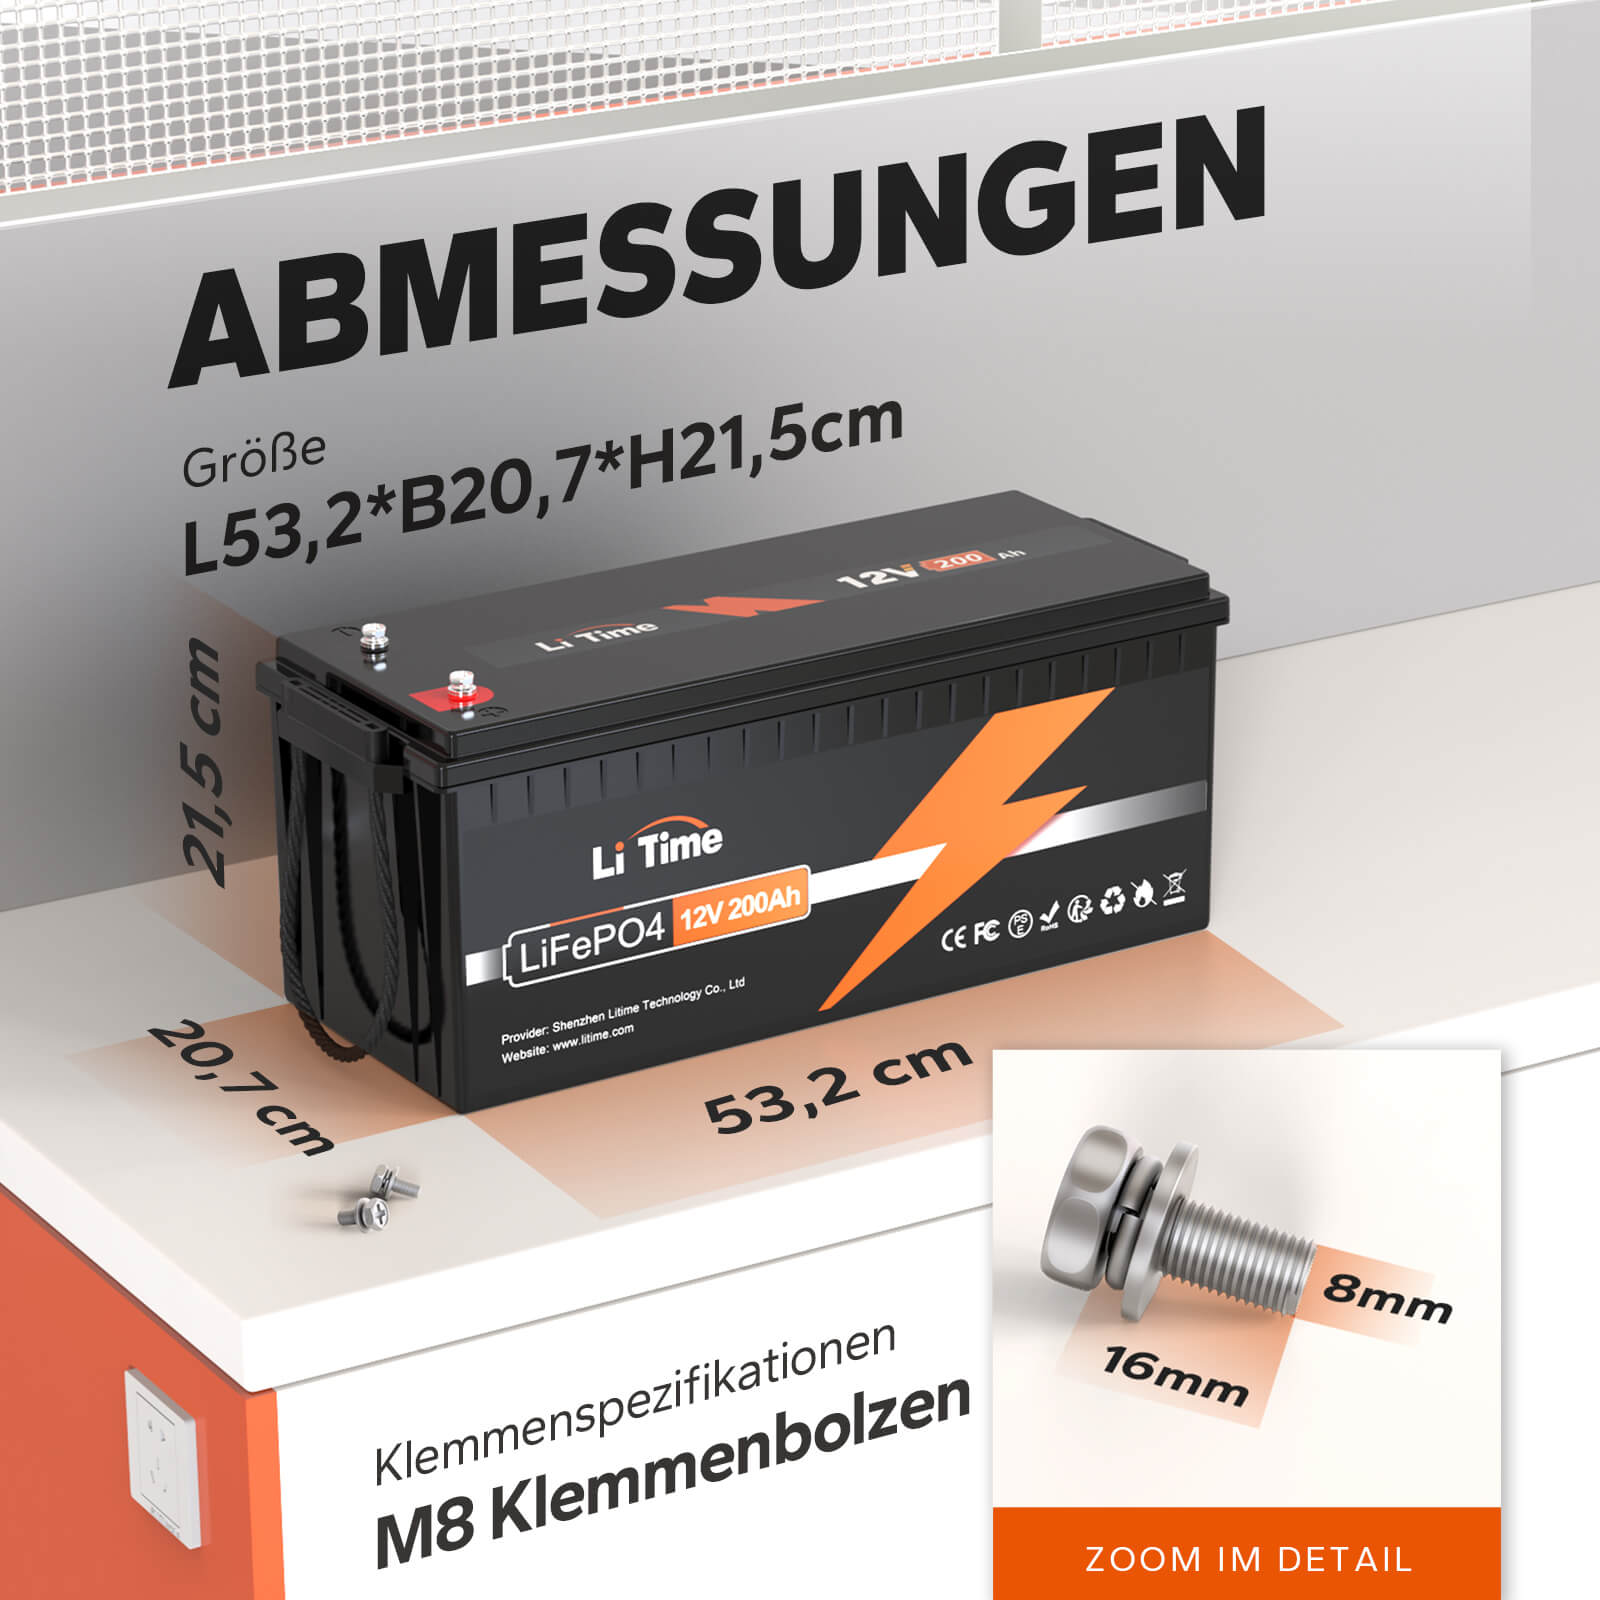 【0% IVA】Batería de litio LiTime 12V 200Ah LiFePO4 (SOLO para edificios residenciales y SOLO en DEU - Solo para clientes en Alemania)